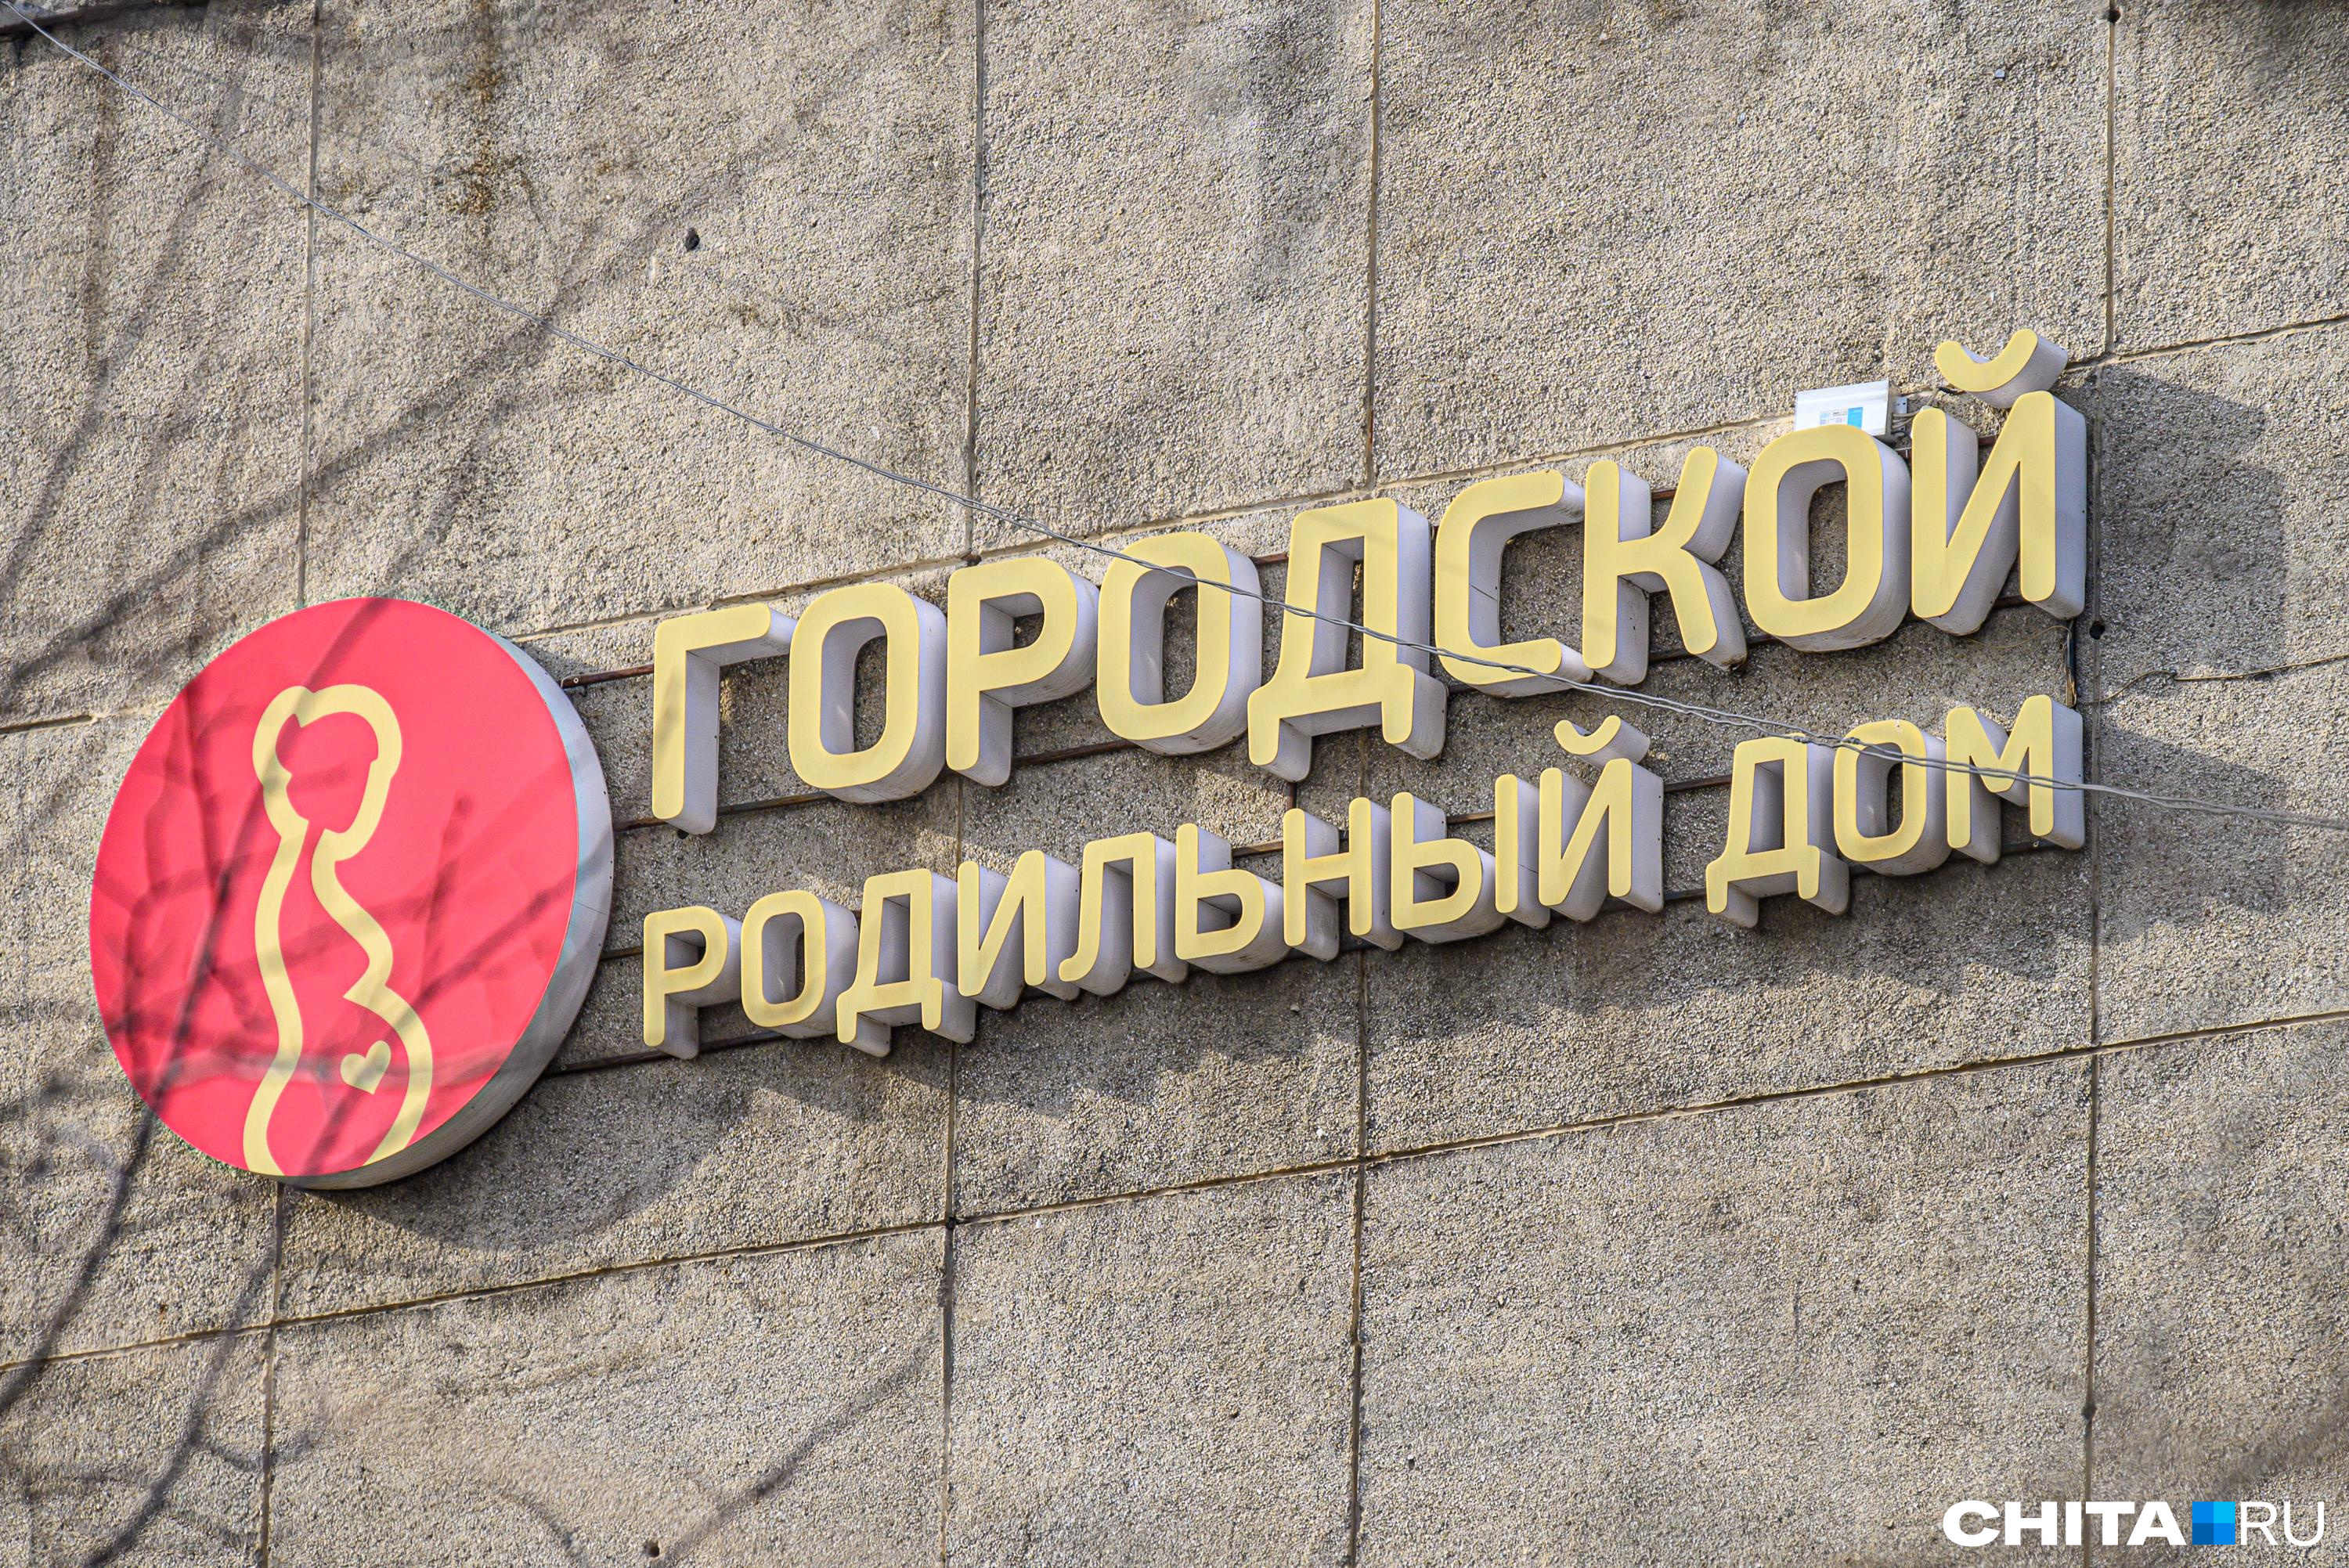 Жителям Новокузнецка объяснили, почему в городе закрыли и никогда не откроют третий роддом